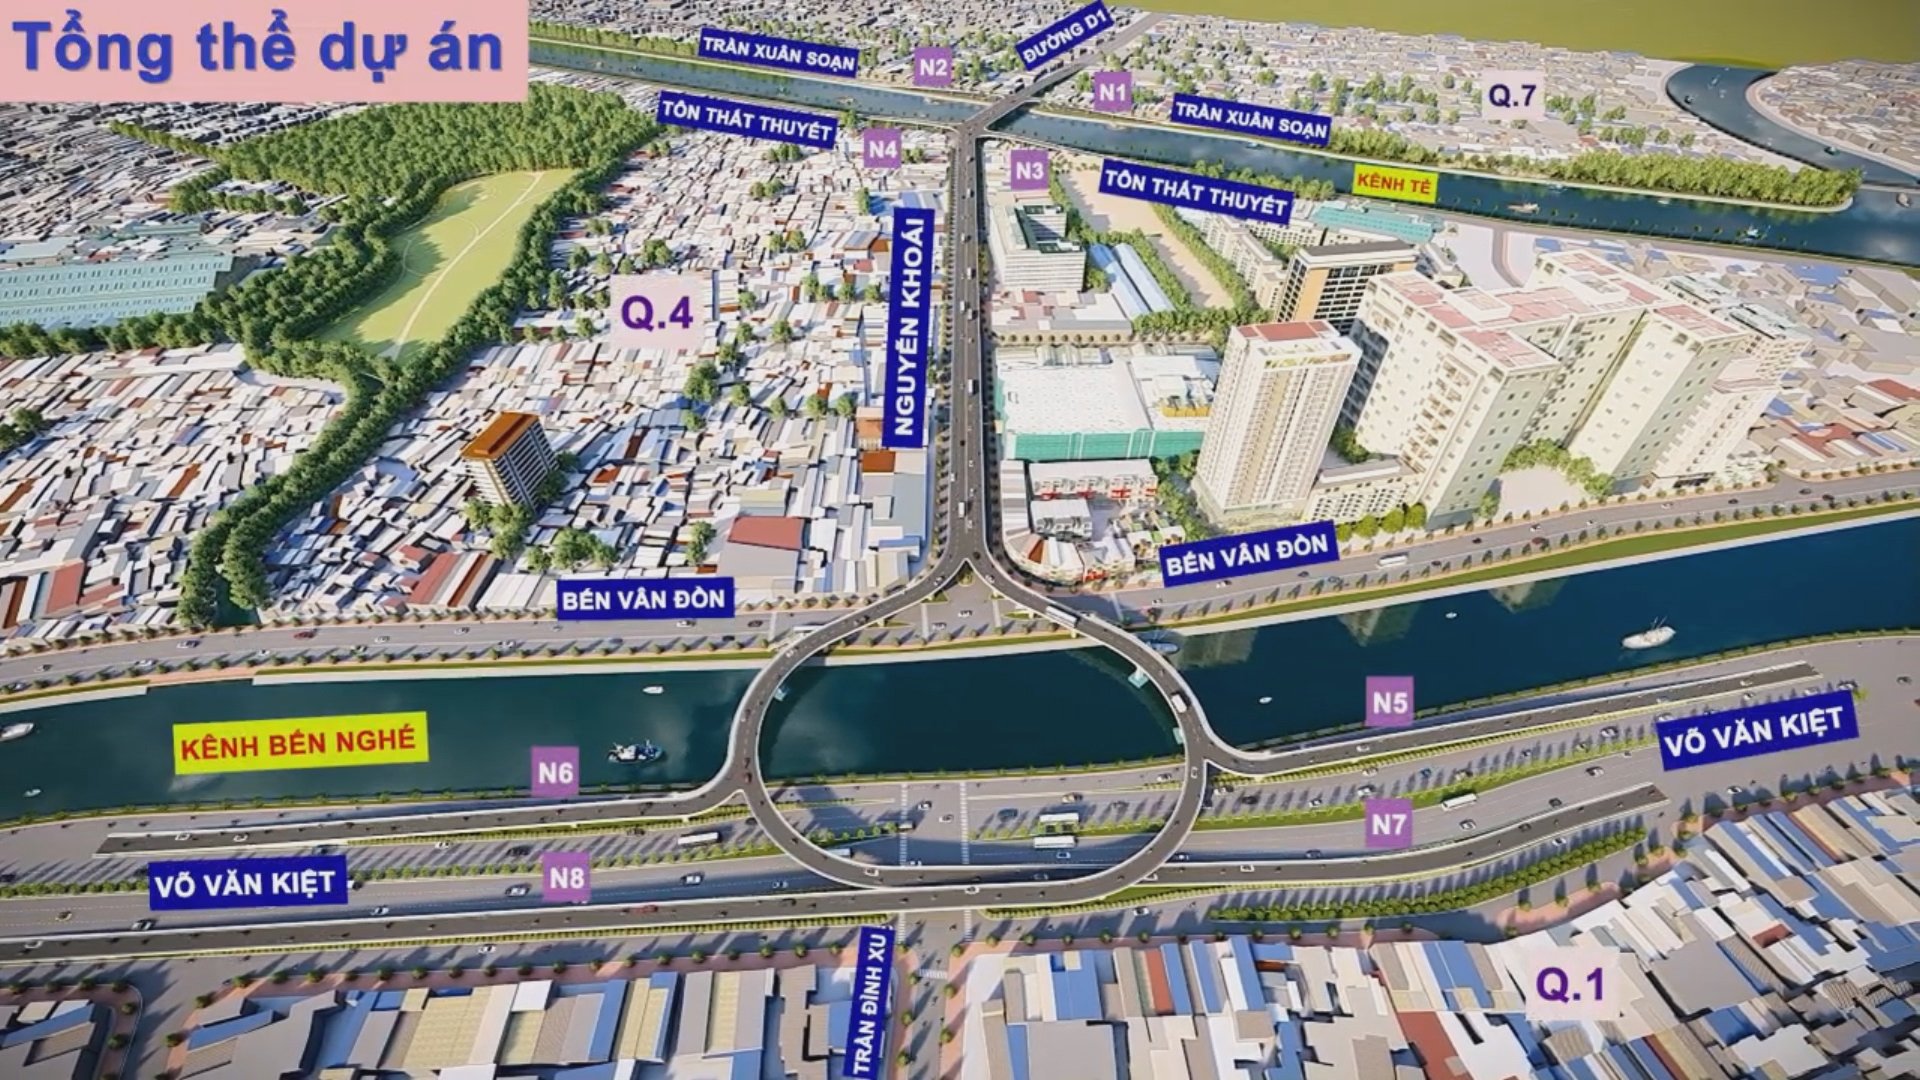 Khu vực sắp được xây cầu 3.700 tỷ, vượt 2 con kênh, nối 3 quận trung tâm TP.HCM- Ảnh 1.